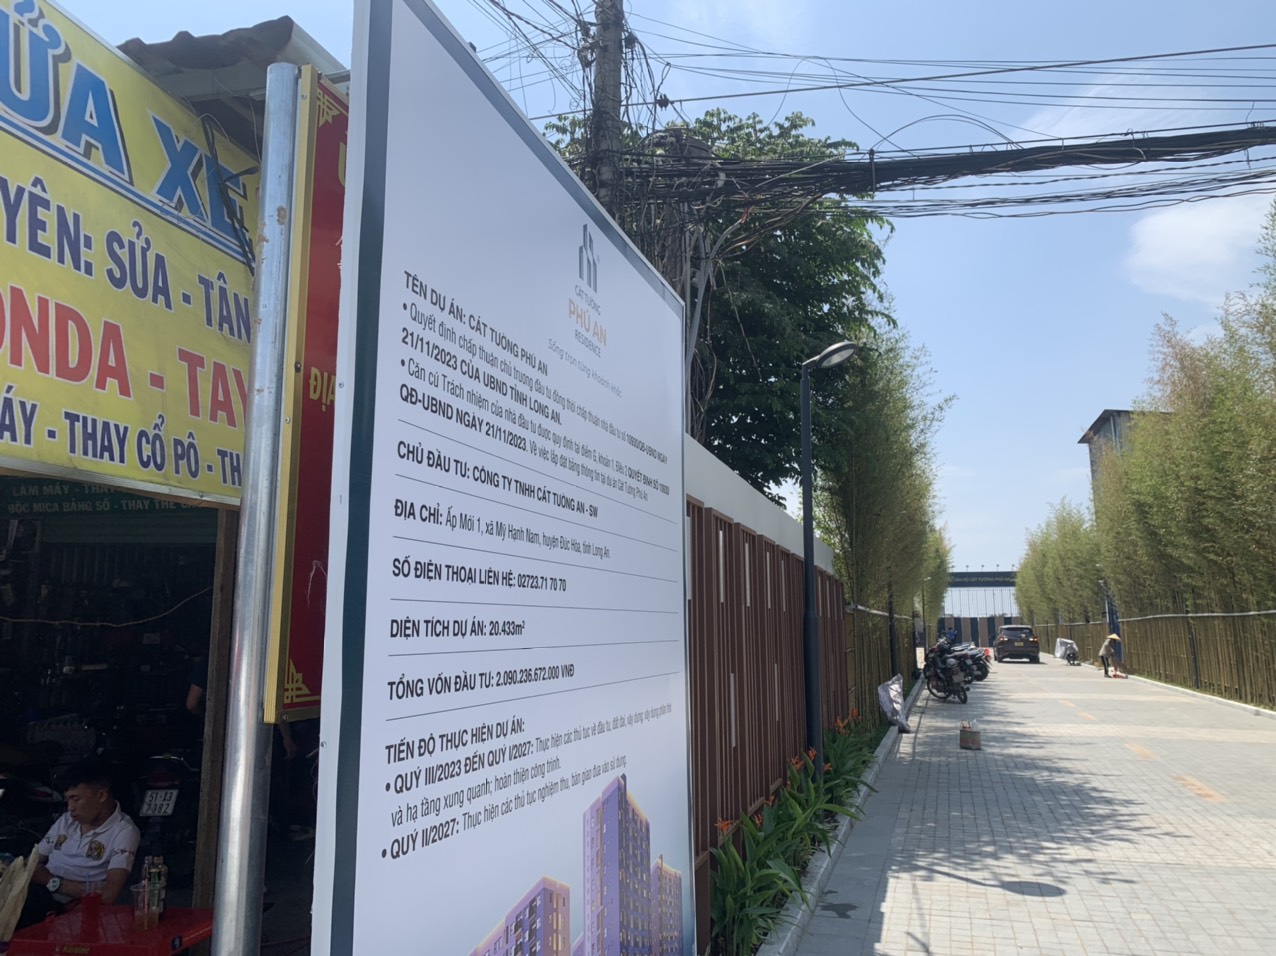 Dự án Cát Tường Phú An ở Long An chưa đủ điều kiện mua bán, chính quyền cắm biển cảnh báo người dân- Ảnh 3.